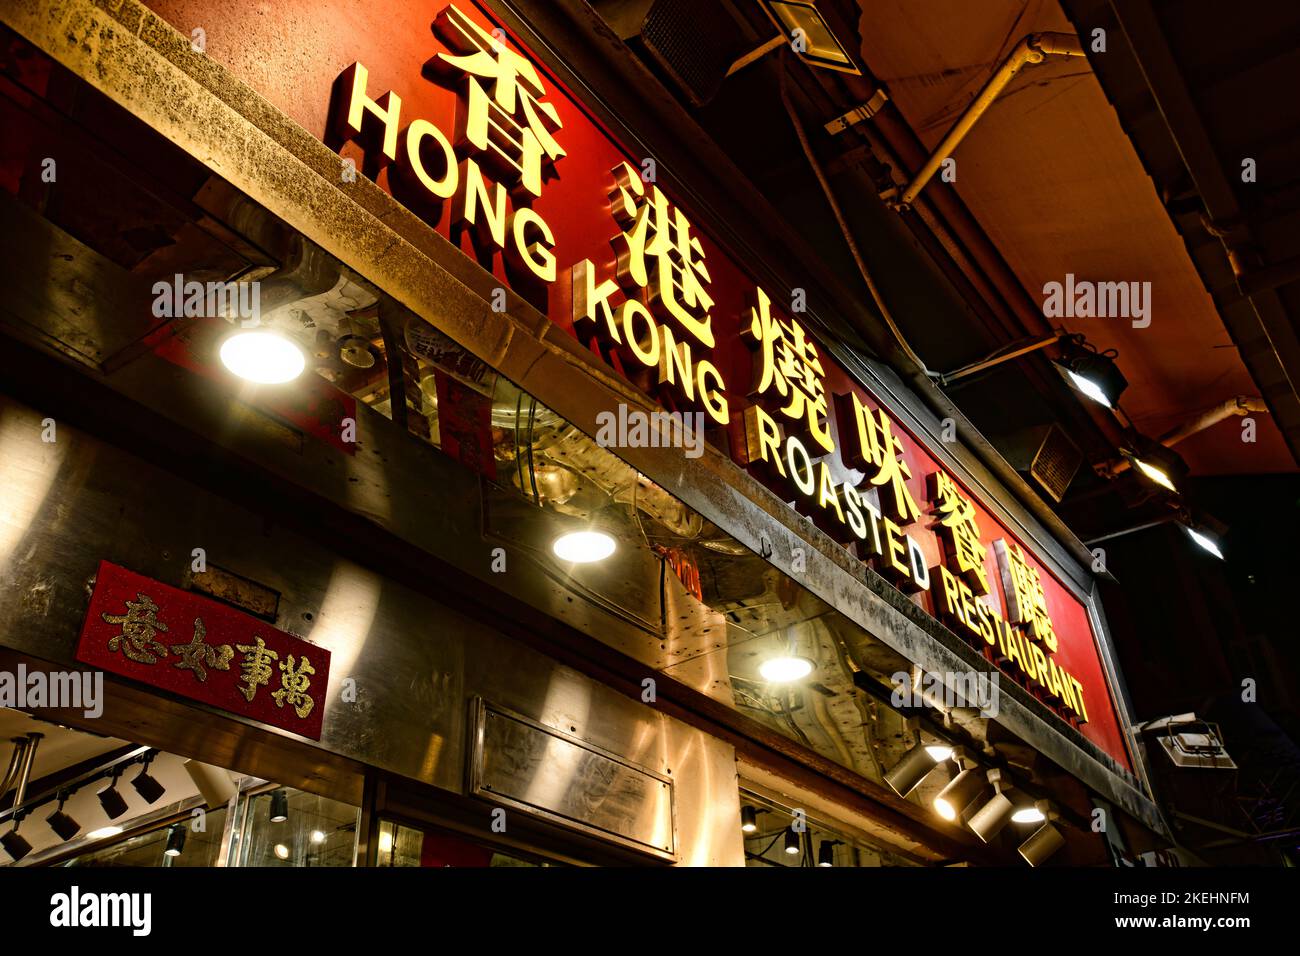 Hong Kong restaurant, Hong Kong, China. Stock Photo